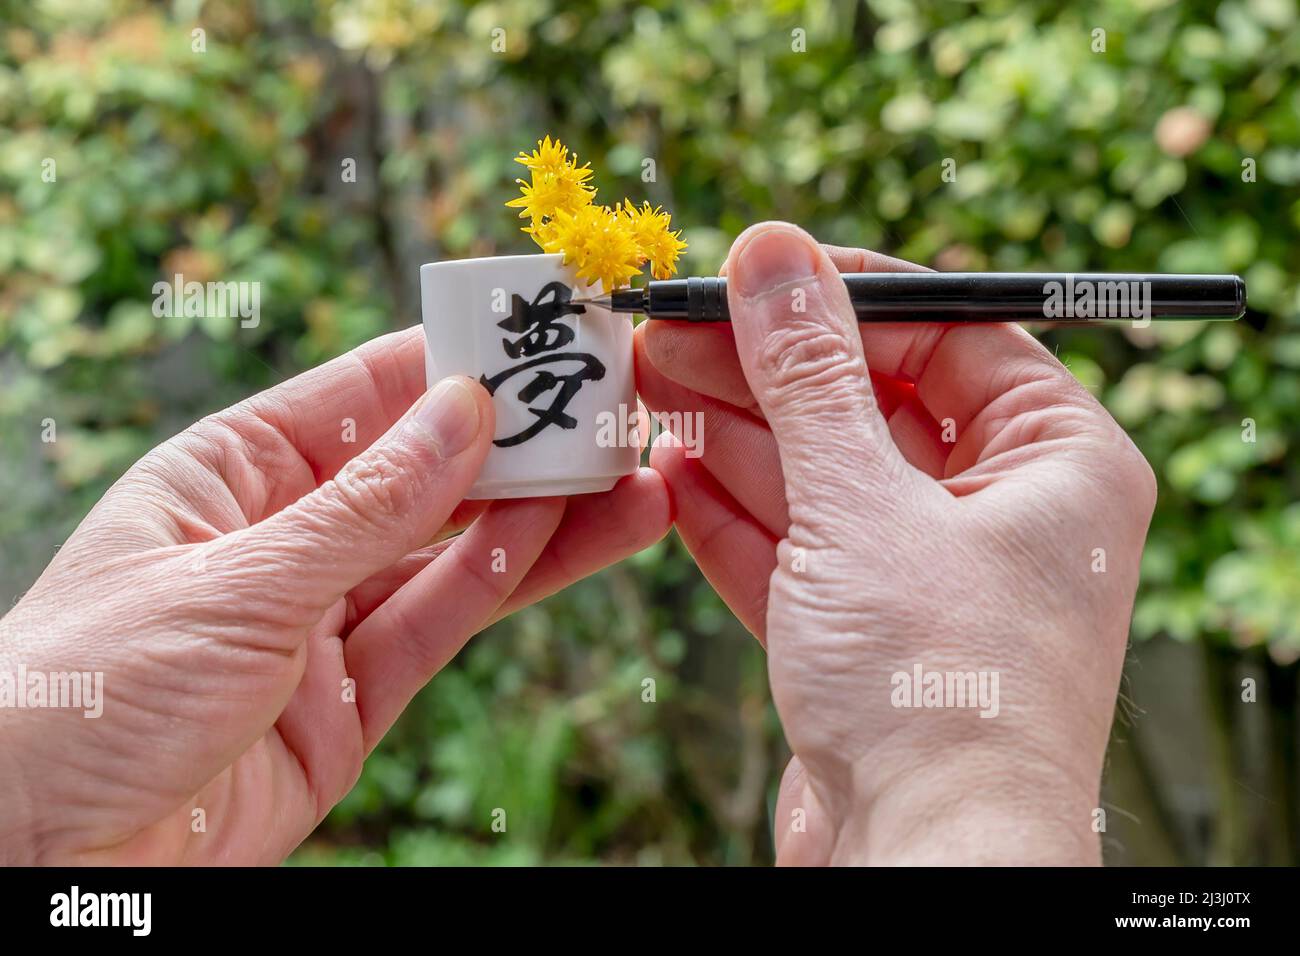 Un uomo scrive la parola sogno in giapponese su una tazza bianca con fiori gialli all'interno Foto Stock